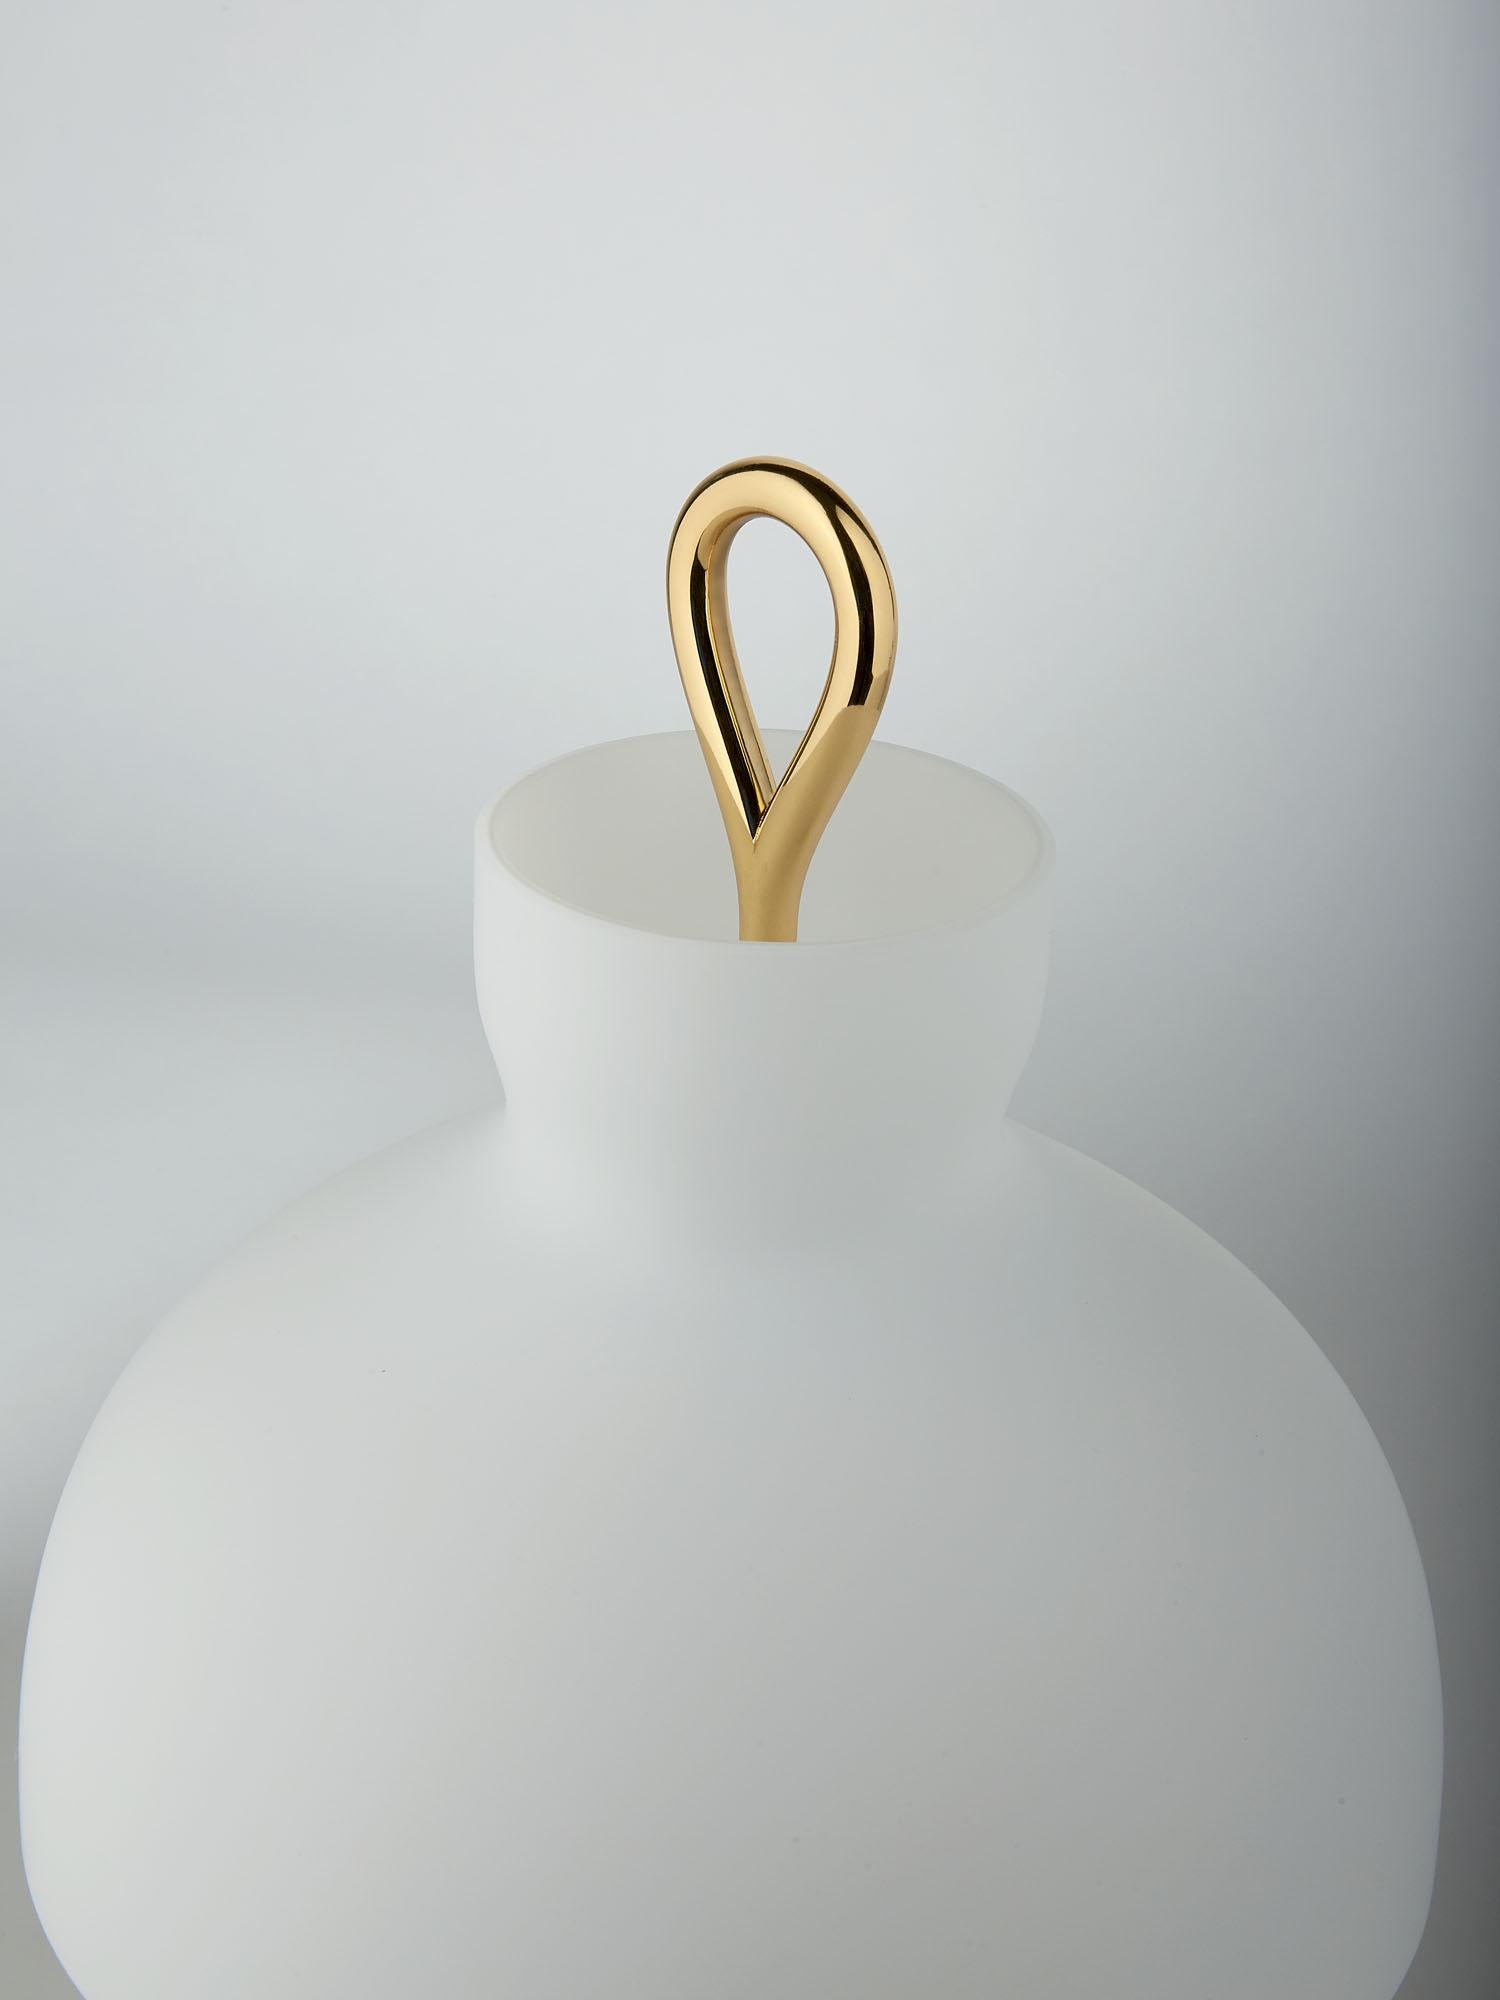 Italian Arenzano Bassa, Low Table Lamp by Ignazio Gardella for TATO For Sale